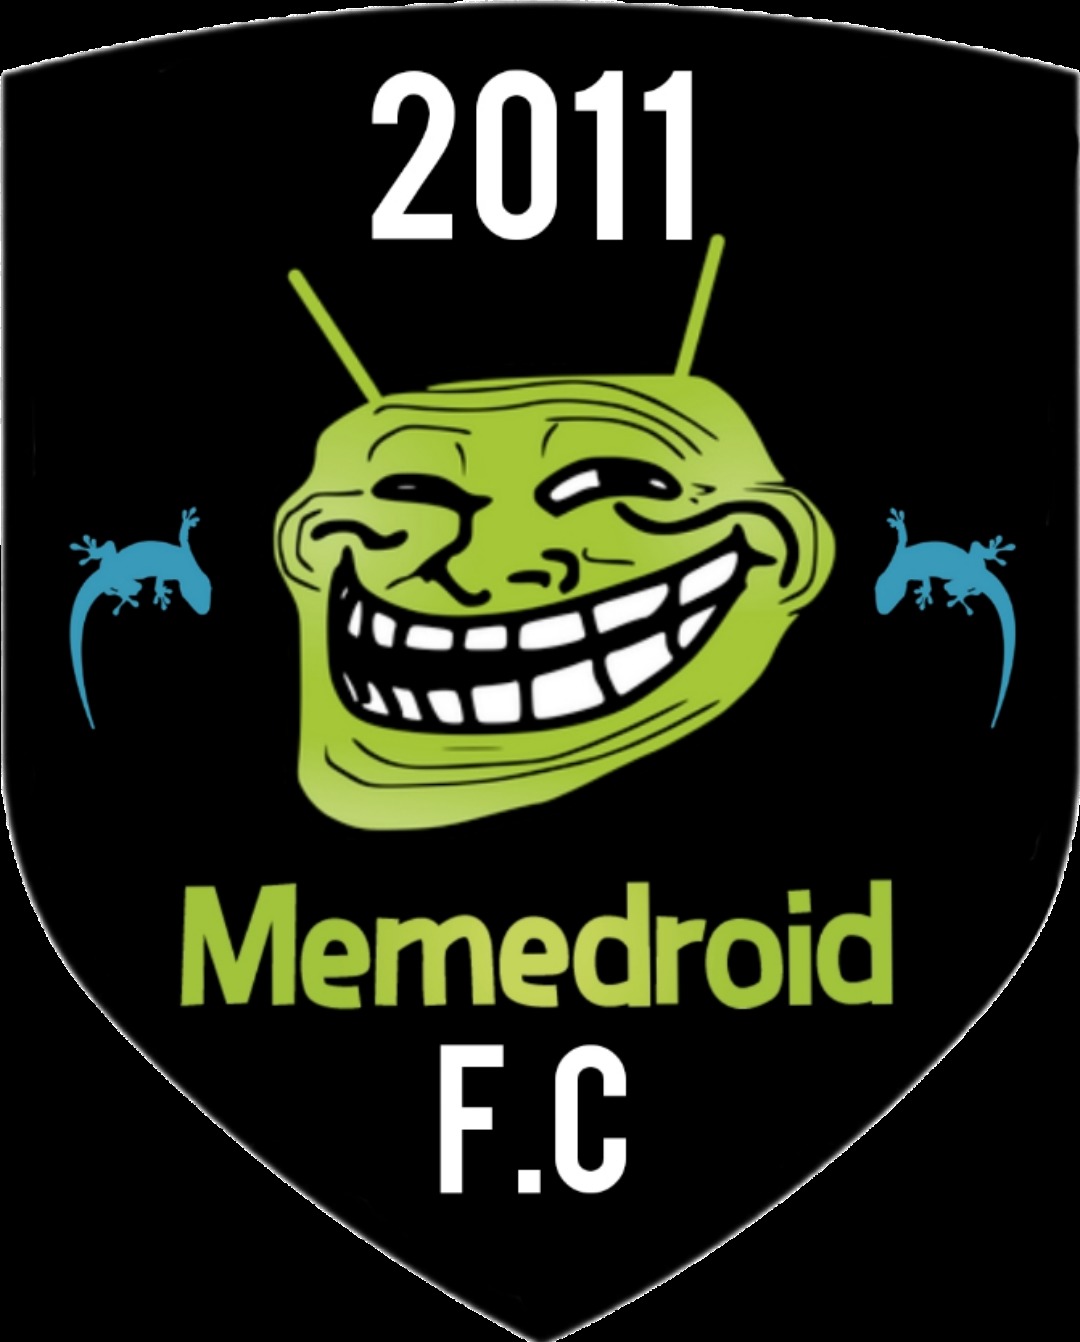 Este es el logo del memedroid F.C